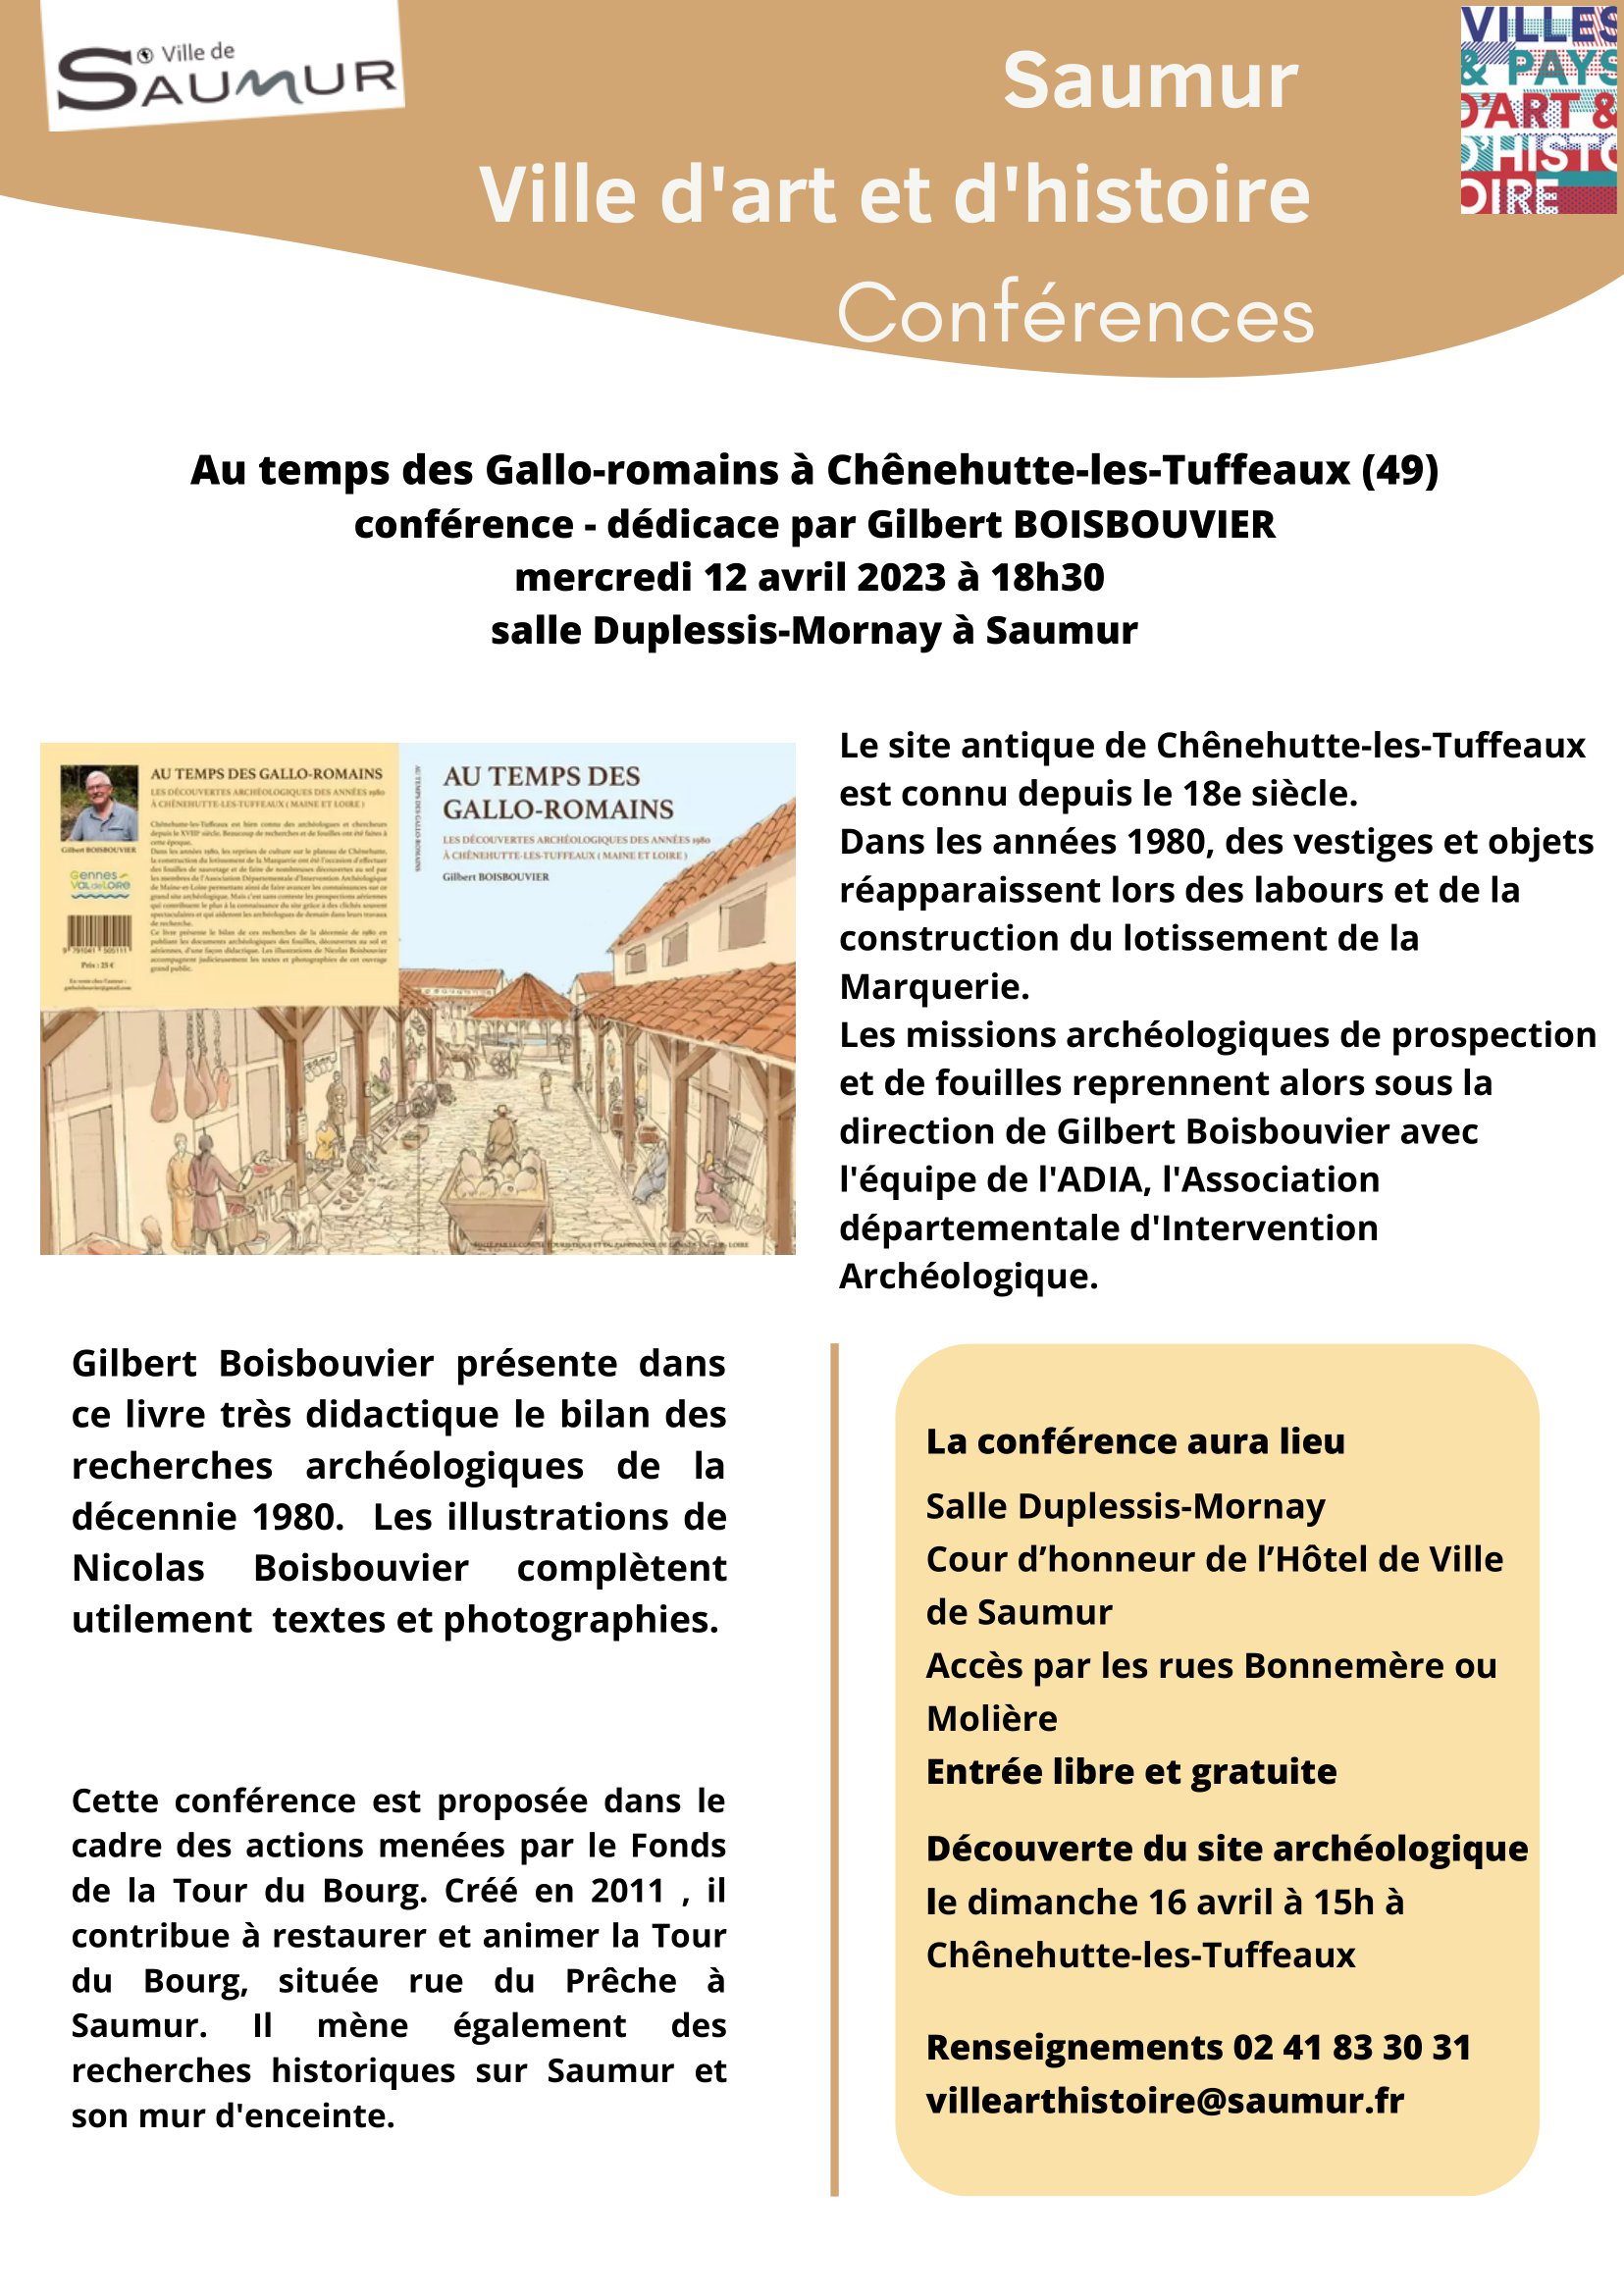 Saumur Ville dart et dhistoire conference Au temps des Gallo romains Gilbert Boisbouvier 12 avril 2023